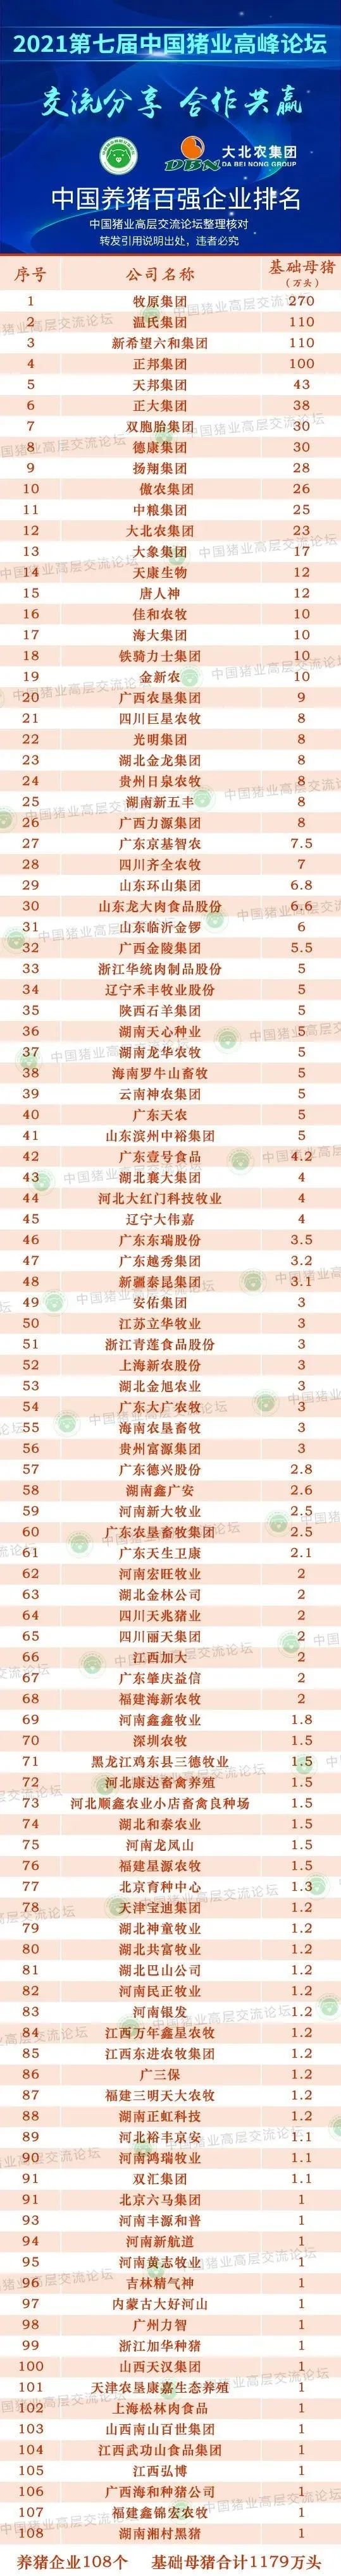 2021中国养猪百强企业排行榜